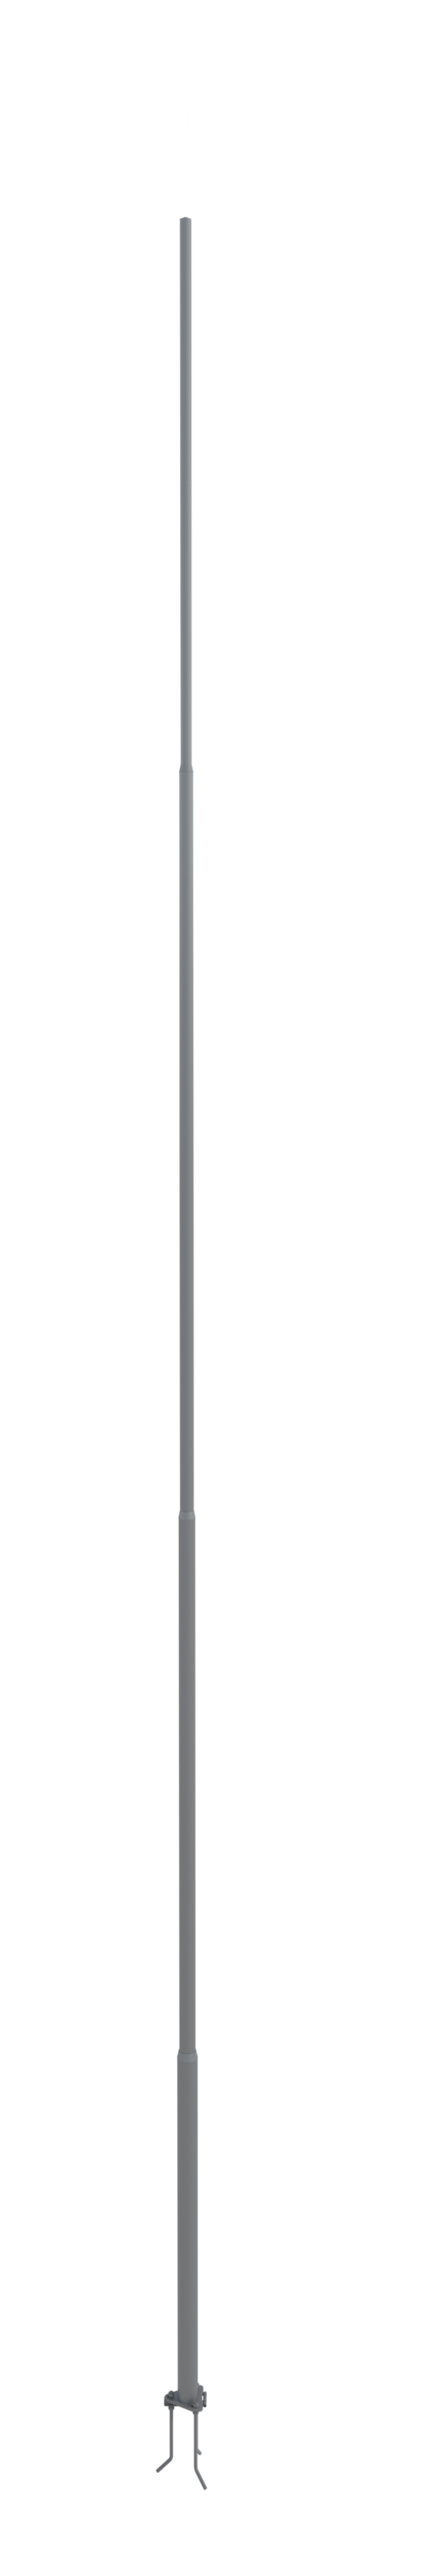 NordWerk МСАА-7 — Молниеотвод высотой 7 метров для активных молниеприемников (алюминий)